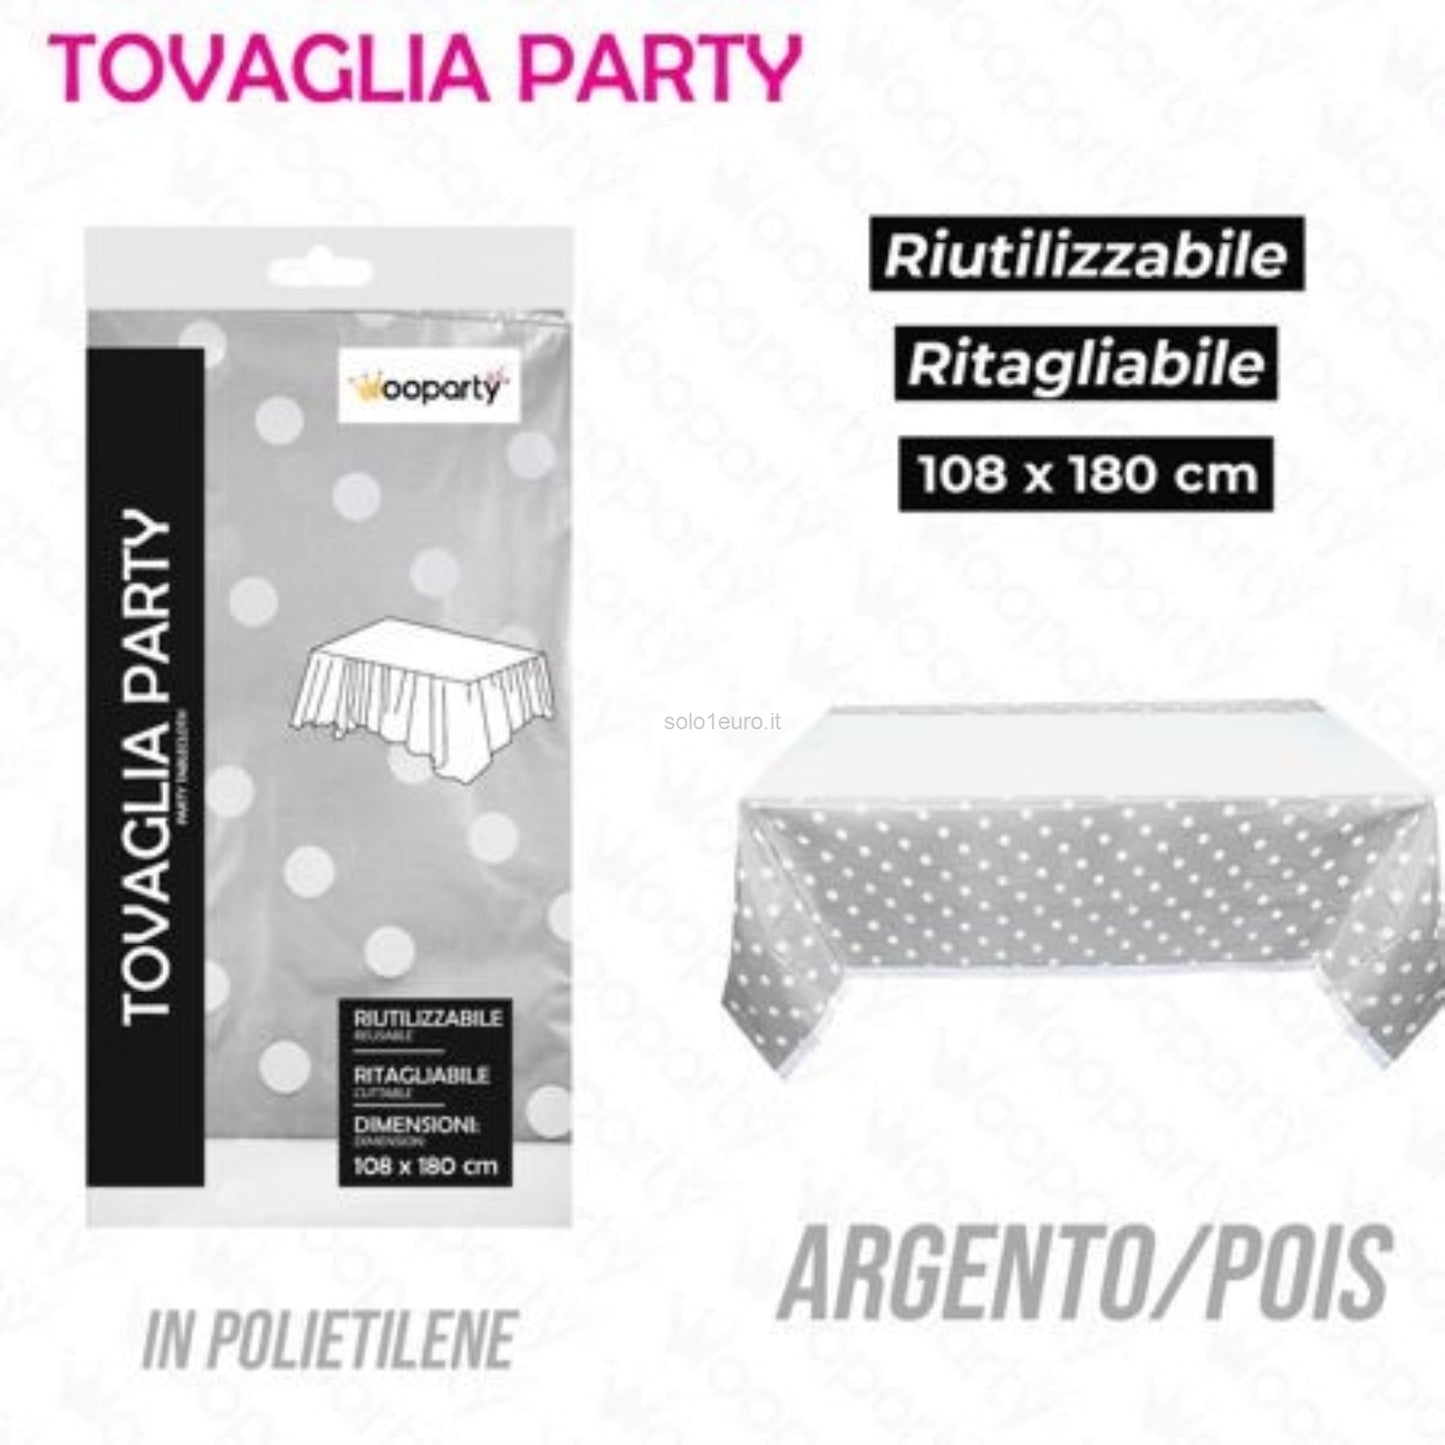 TOVAGLIA PARTY 108*180CM ARGENTO